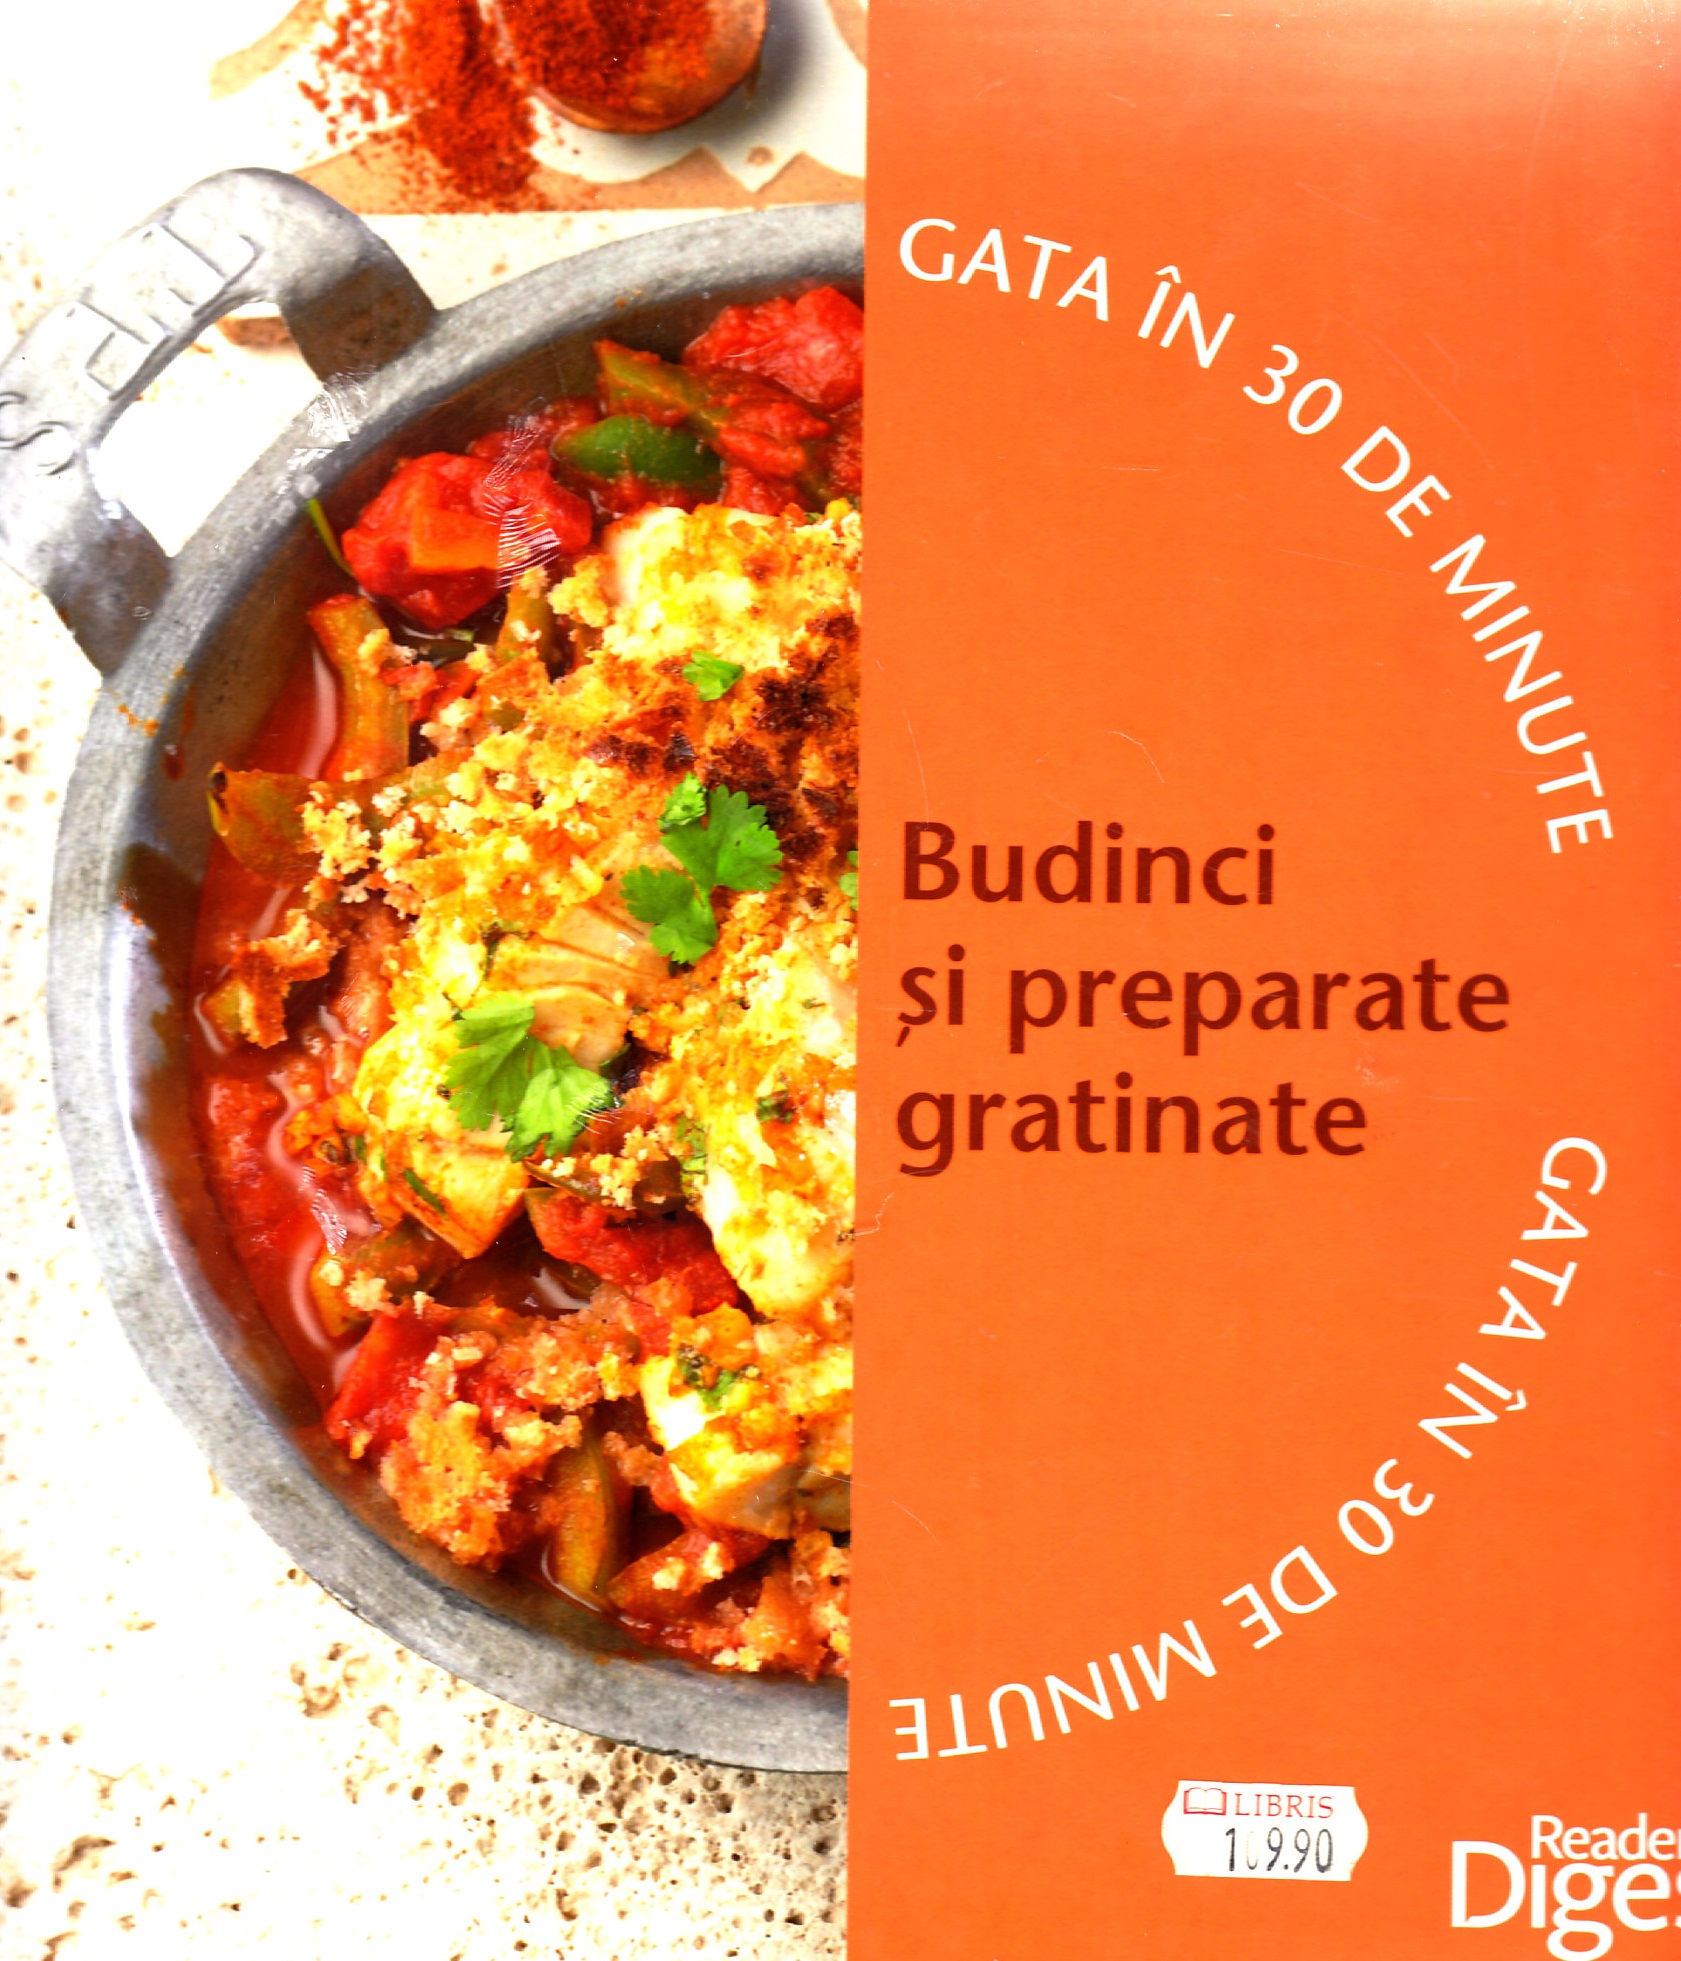 Set Gata in 30 de minute: Budinci si preparate gratinate + Salate si dressinguri proaspete